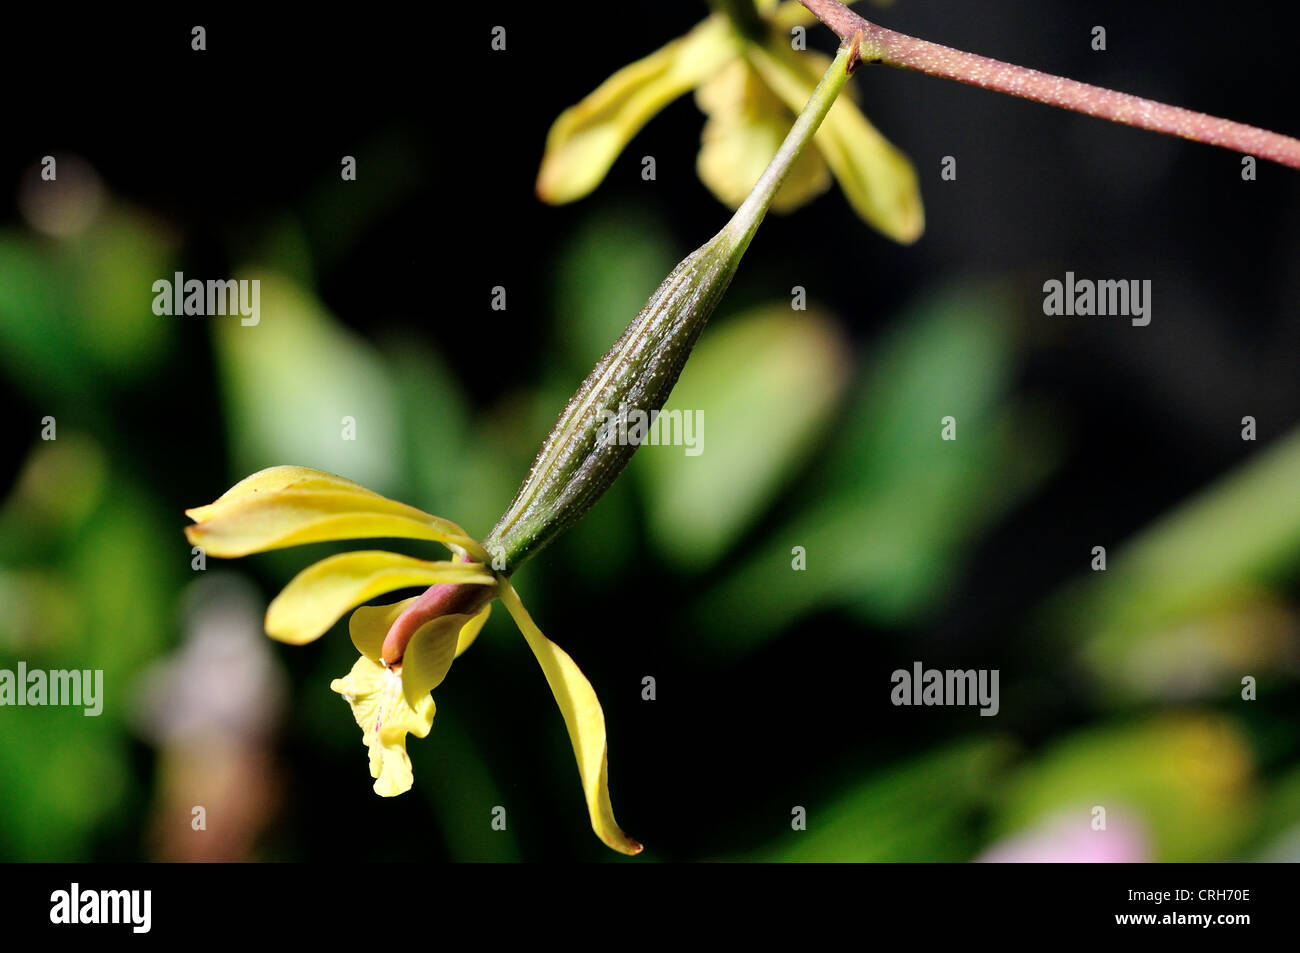 Samenkapsel auf eine Orchidee Blume wächst. Stockfoto